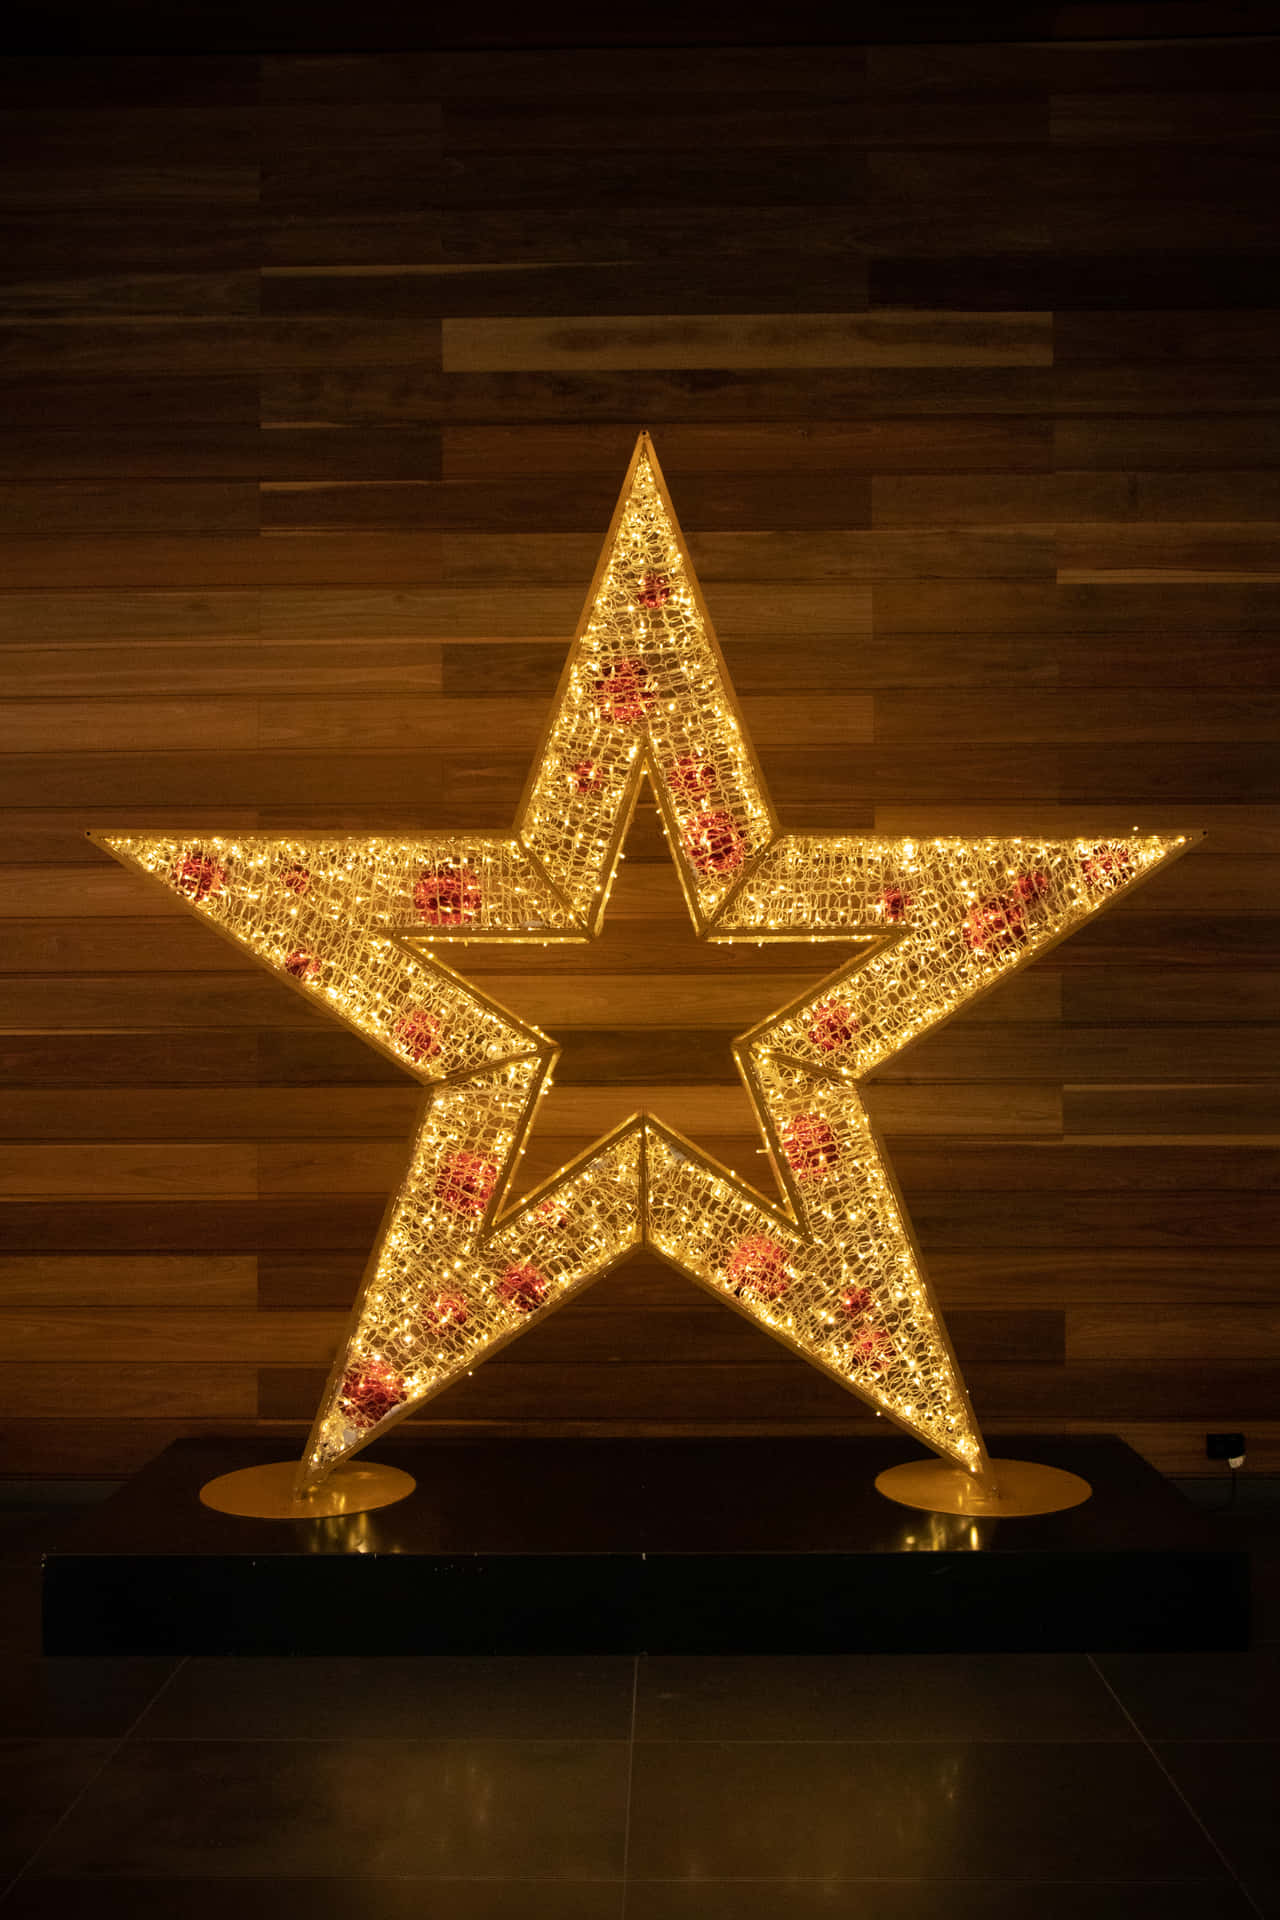 Låtjulstjärnans Magi Lysa Upp Ditt Hem Under Denna Högtid. (let The Magic Of The Christmas Star Illuminate Your Home This Holiday.) Wallpaper